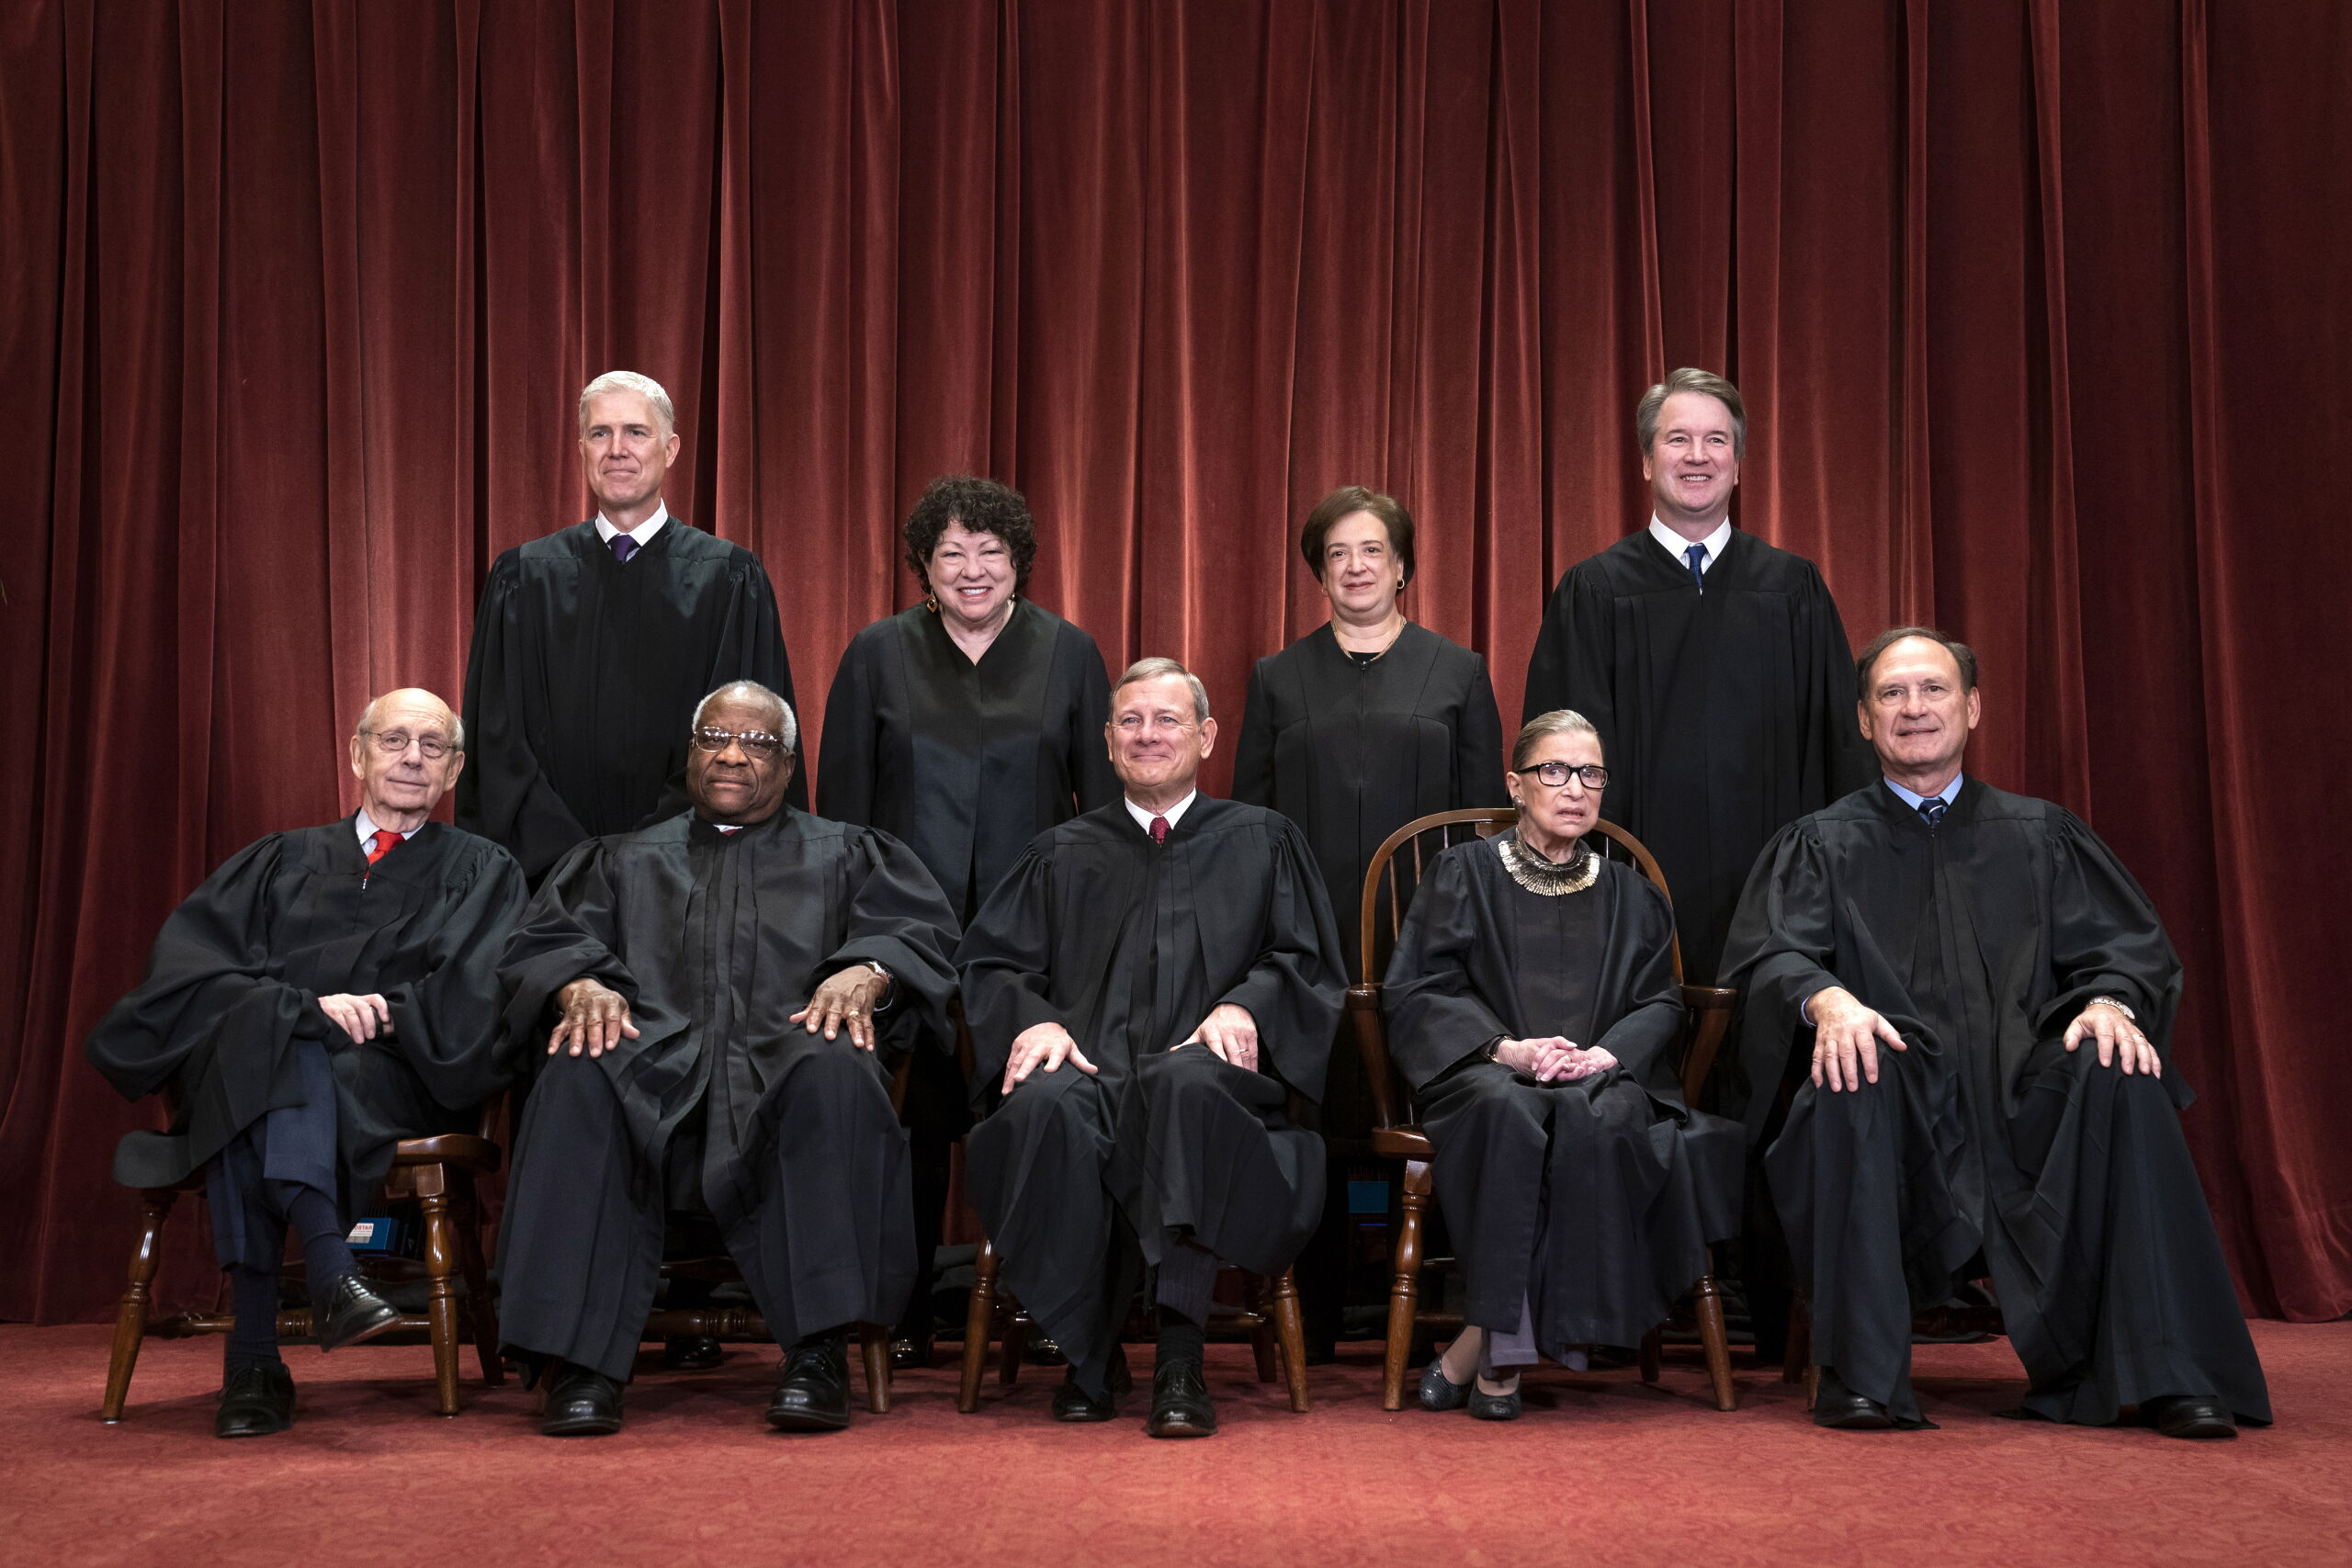 Het Amerikaanse hooggerechtshof met de overleden Ruth Bader Ginsburg zittend tweede van rechts